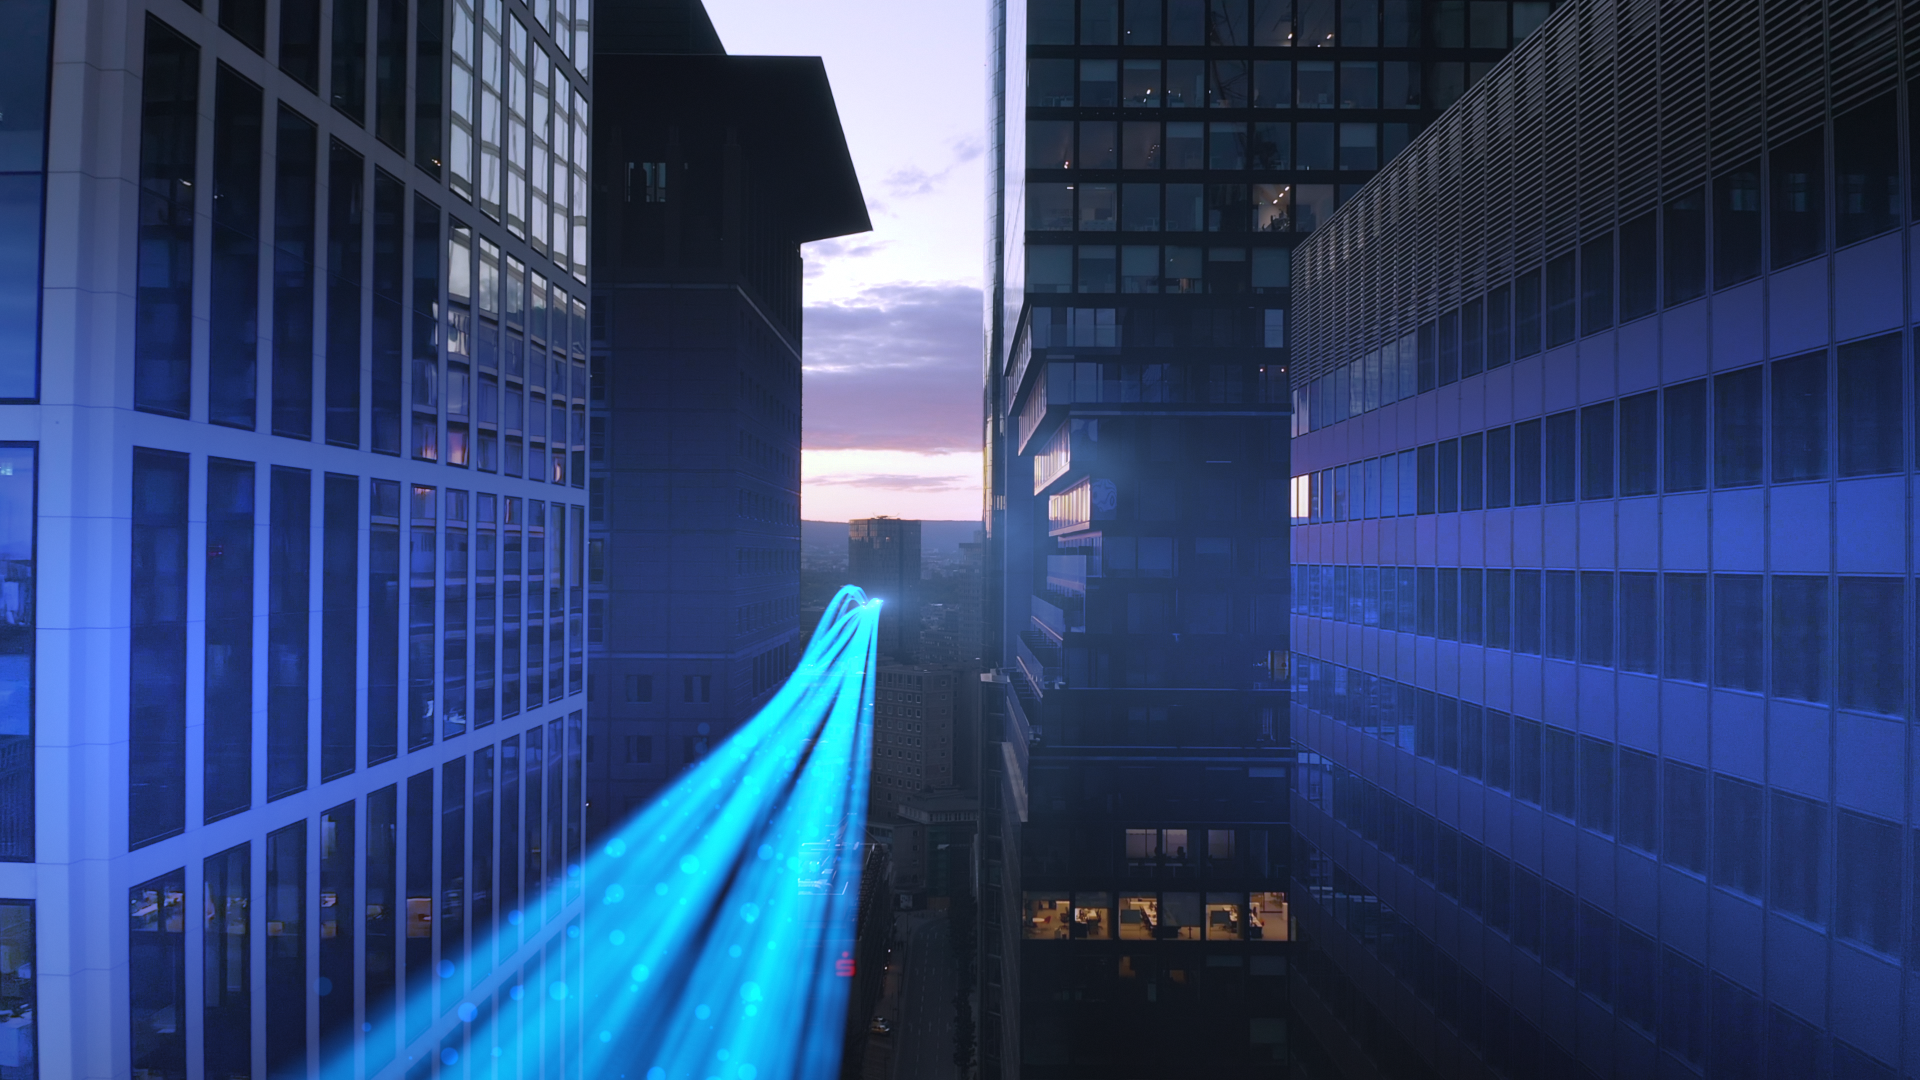 leuchtend blaue Streifen, die zwischen Hochhäusern durchfliegen und sie anstrahlen